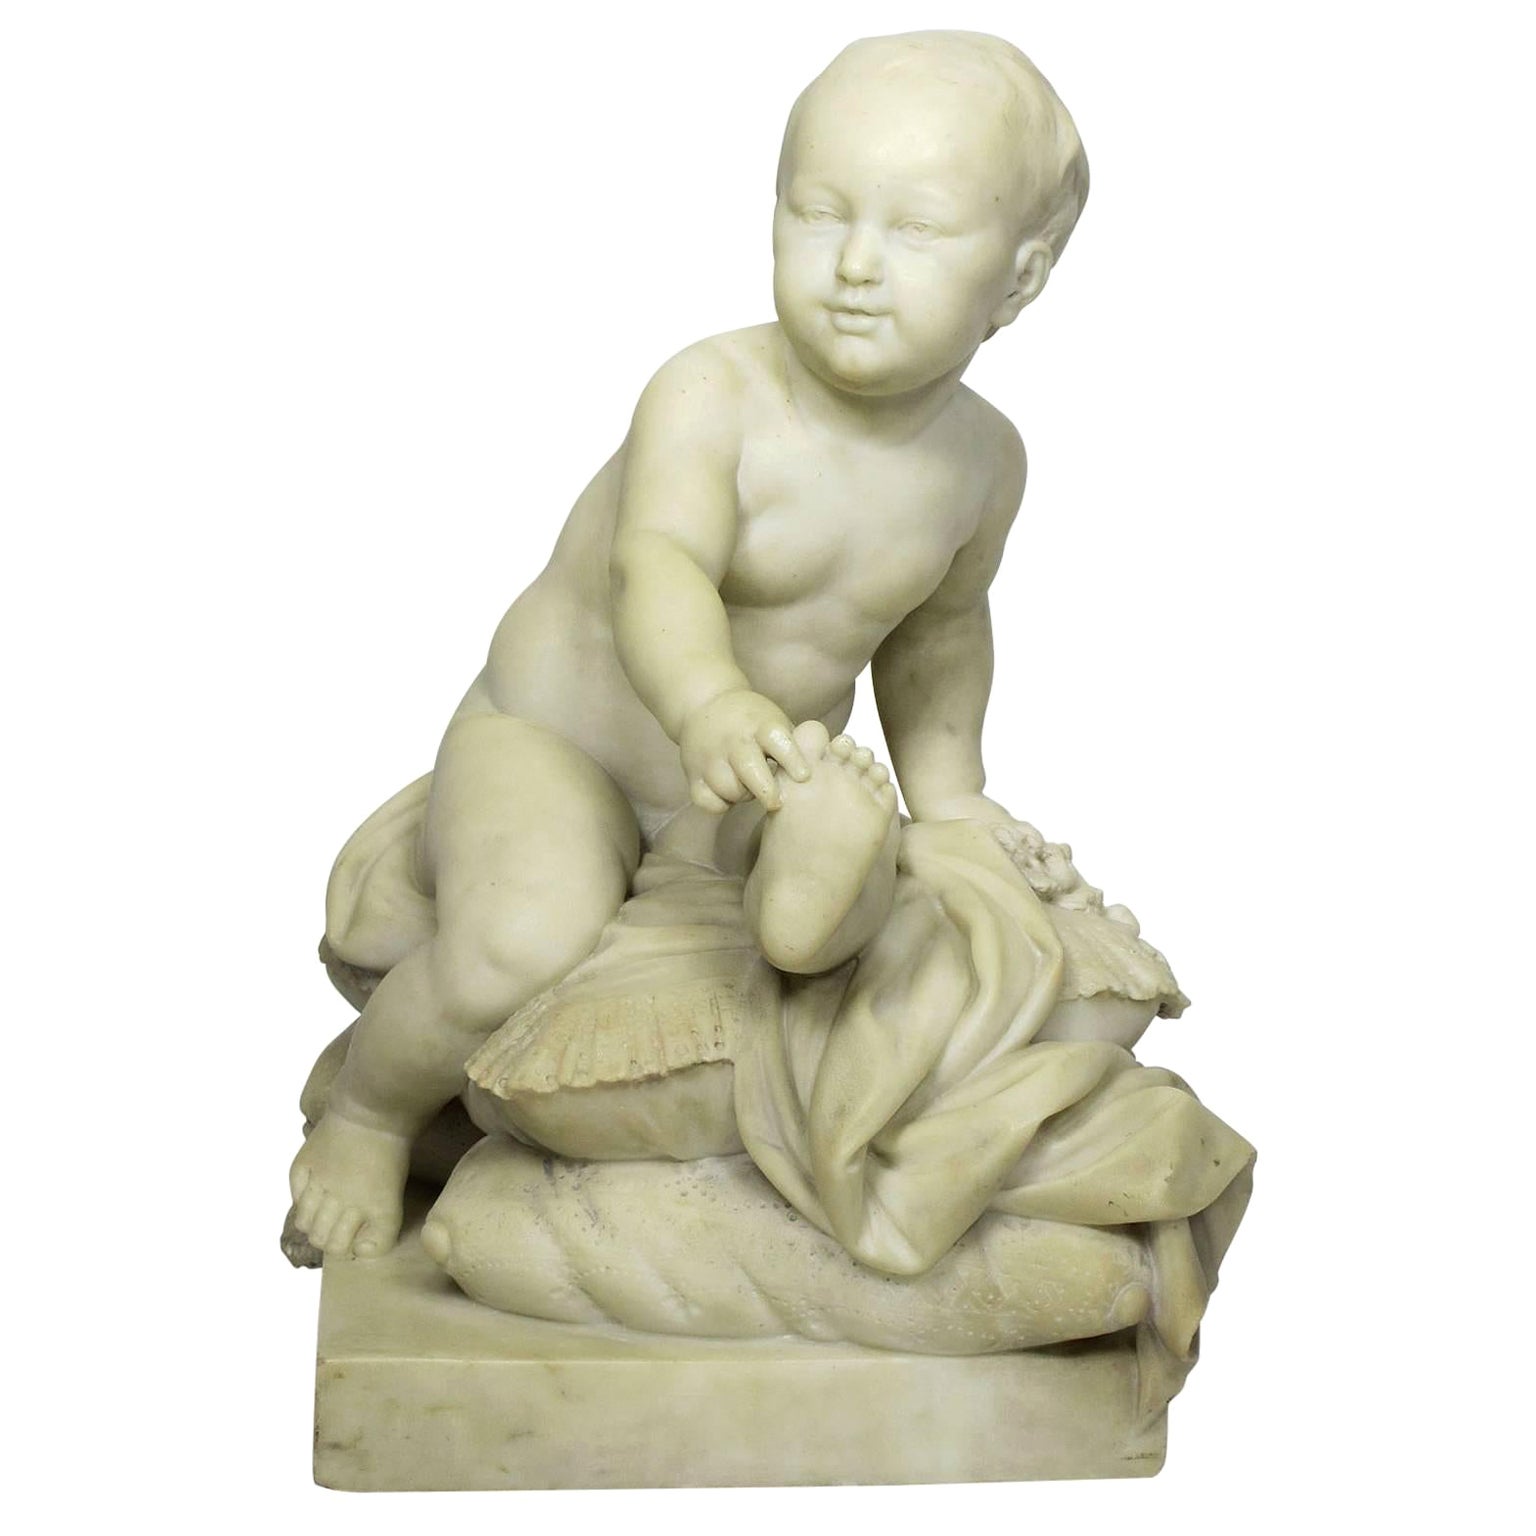 Sculpture en marbre sculpté du XIXe siècle représentant un jeune garçon Prince sur un oreiller